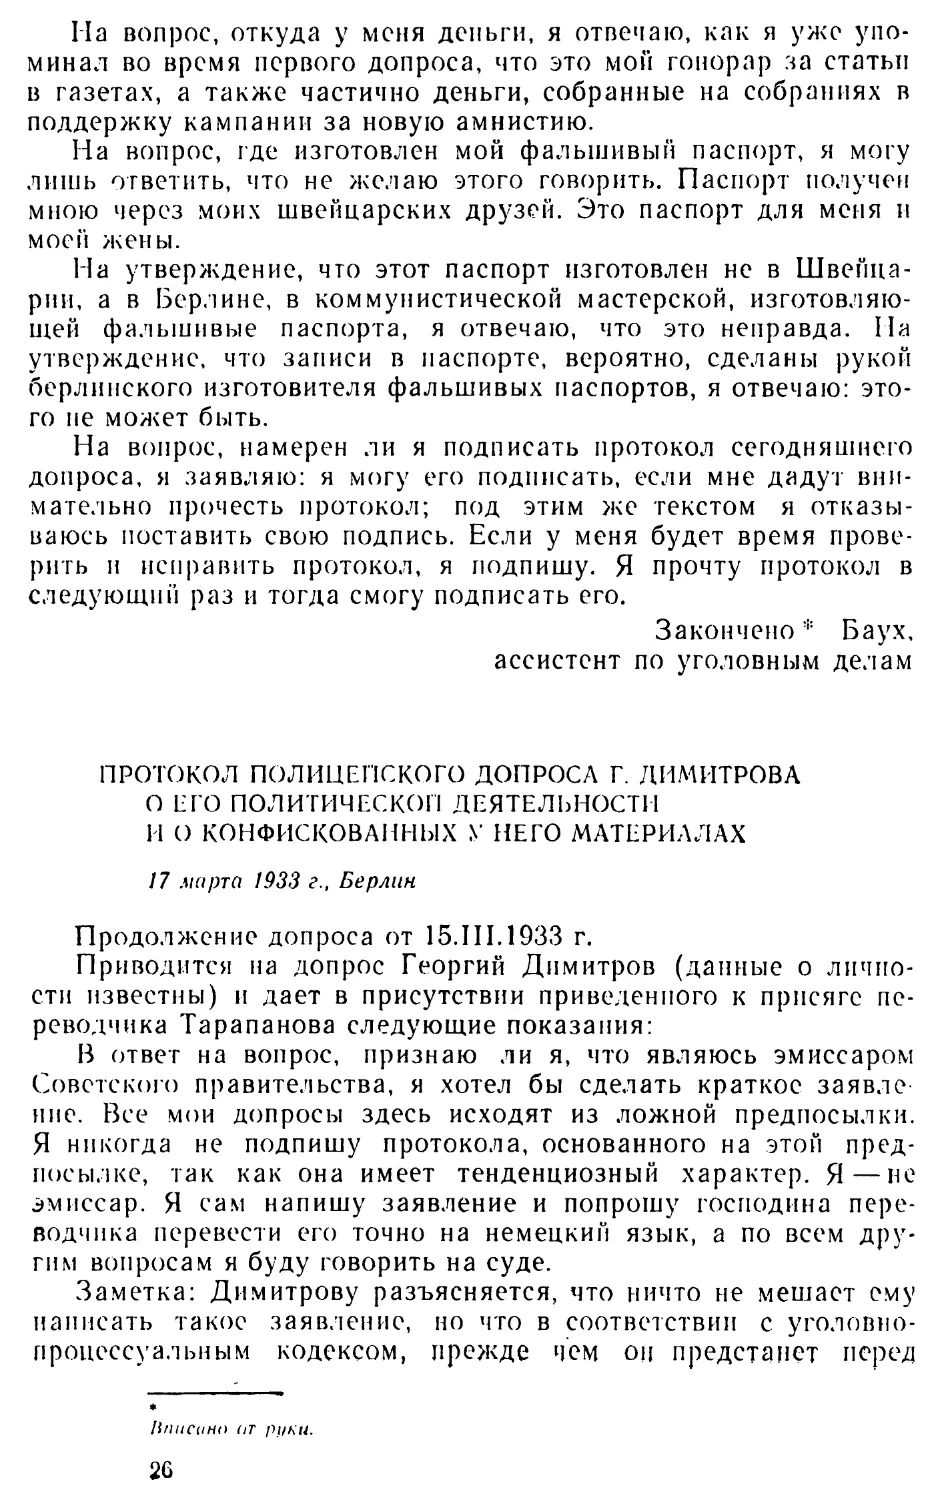 Протокол полицейского допроса Г. Димитрова о его политической деятельности и о конфискованных* у него материалах. 17 марта 1933 г